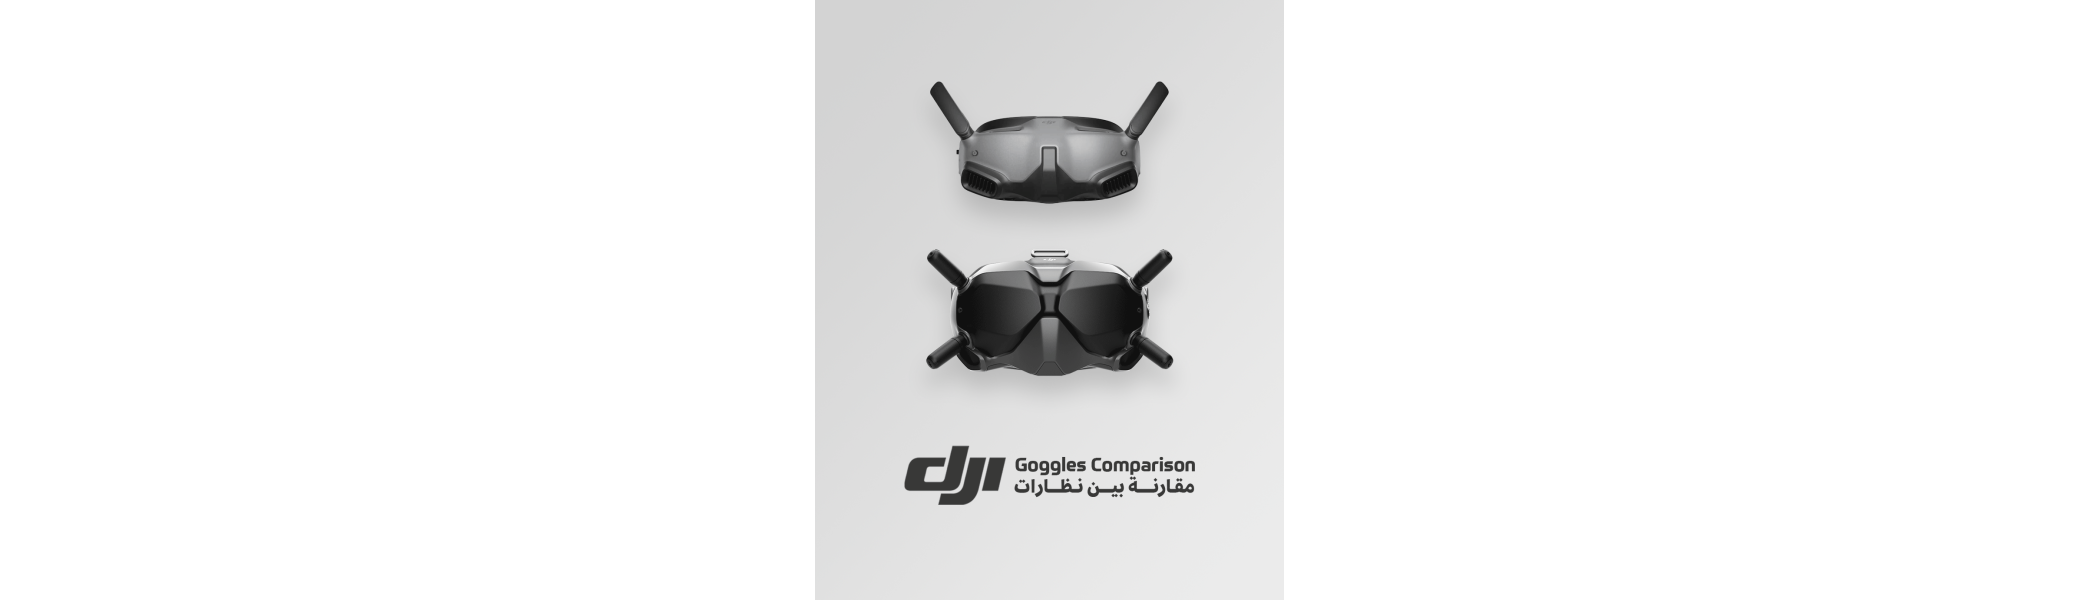 DJI Goggles Comparison